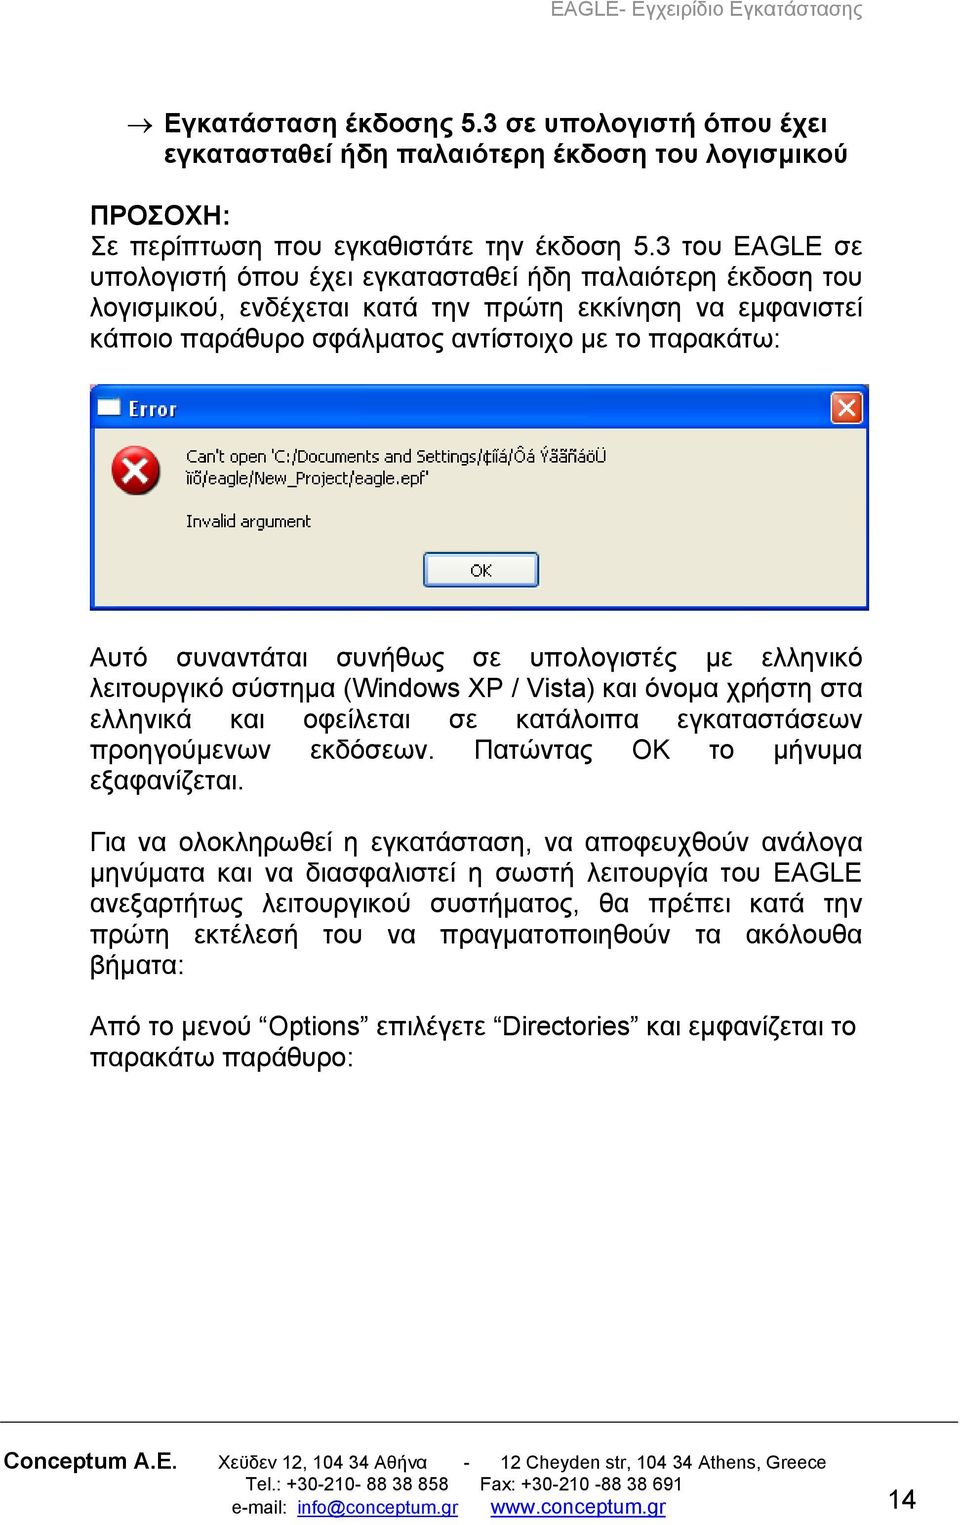 συναντάται συνήθως σε υπολογιστές με ελληνικό λειτουργικό σύστημα (Windows XP / Vista) και όνομα χρήστη στα ελληνικά και οφείλεται σε κατάλοιπα εγκαταστάσεων προηγούμενων εκδόσεων.